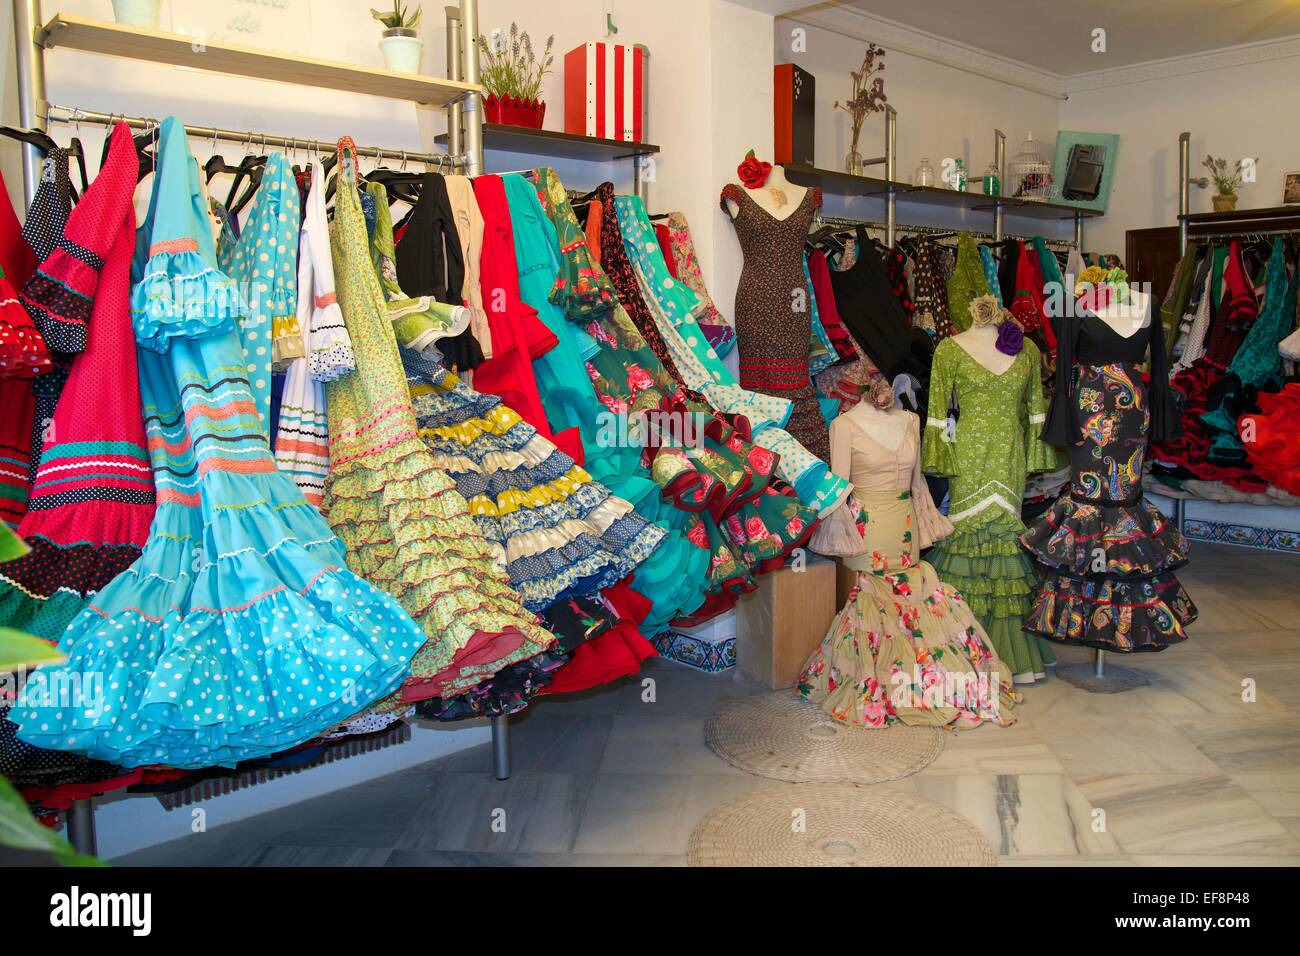 Trajes de flamenca en un almacén, El Rocío, El Rocío, Costa de la Luz, Andalucía, España Foto de stock